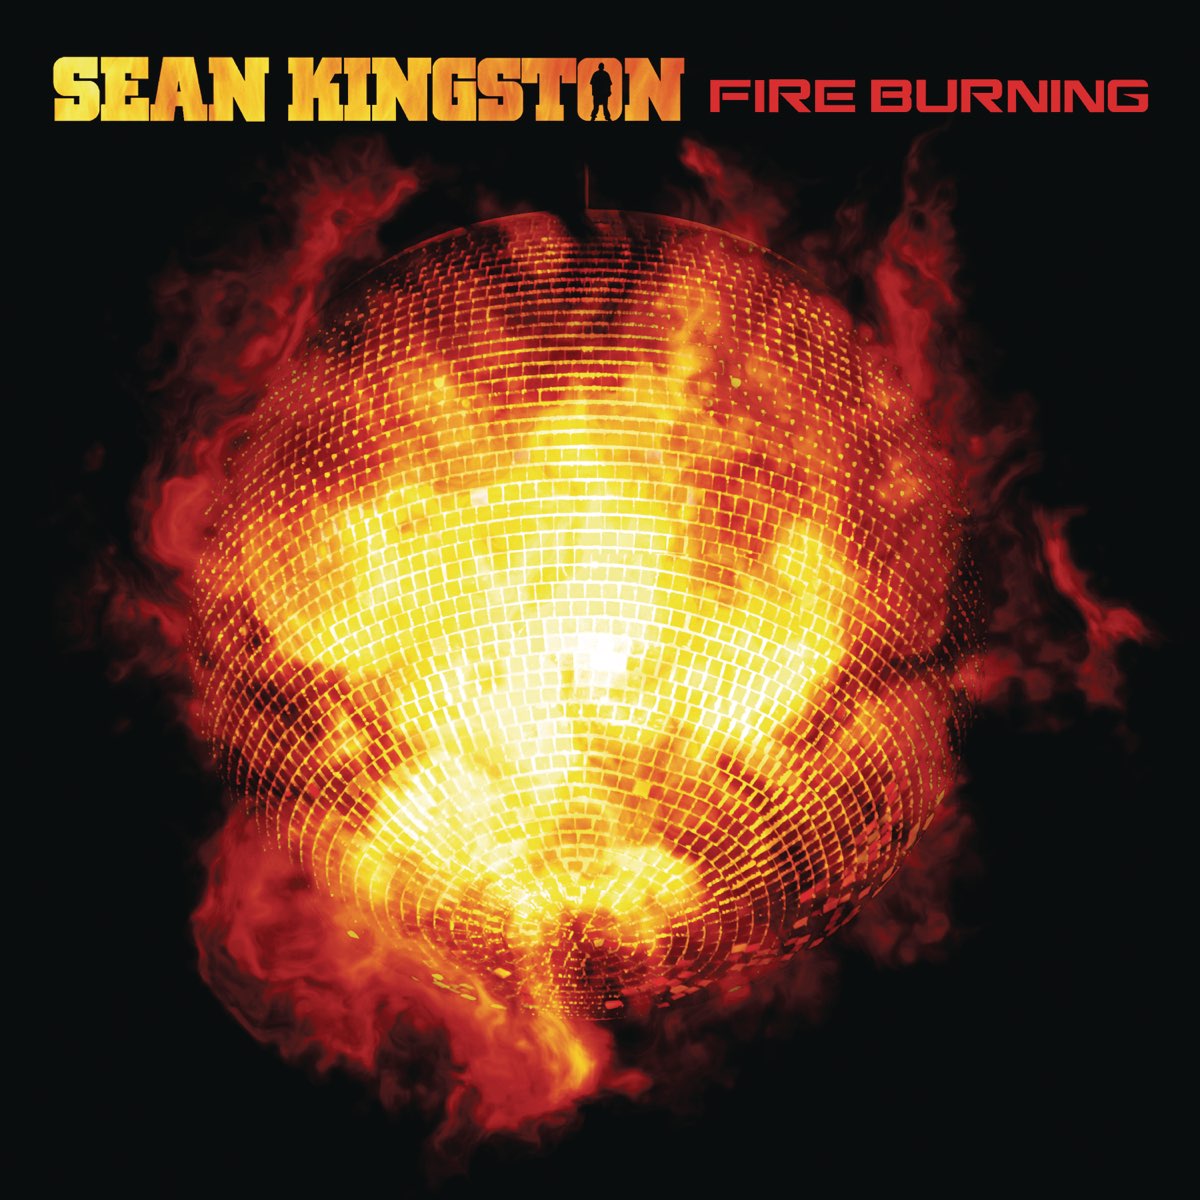 Sean Kingston — Fire Burning cover artwork